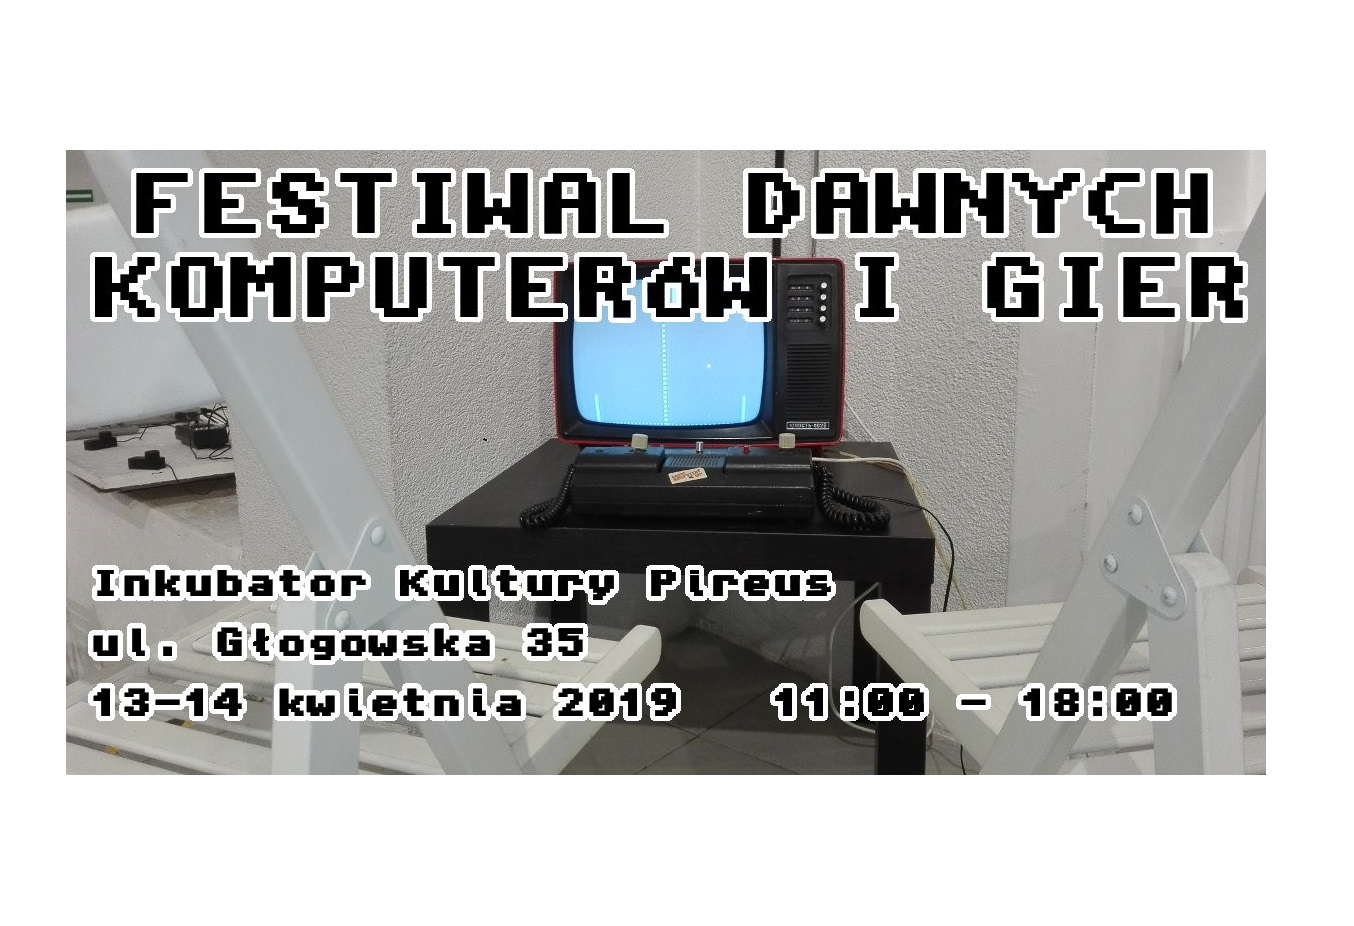 Festiwal Dawnych Komputerów i Gier - grafika artykułu